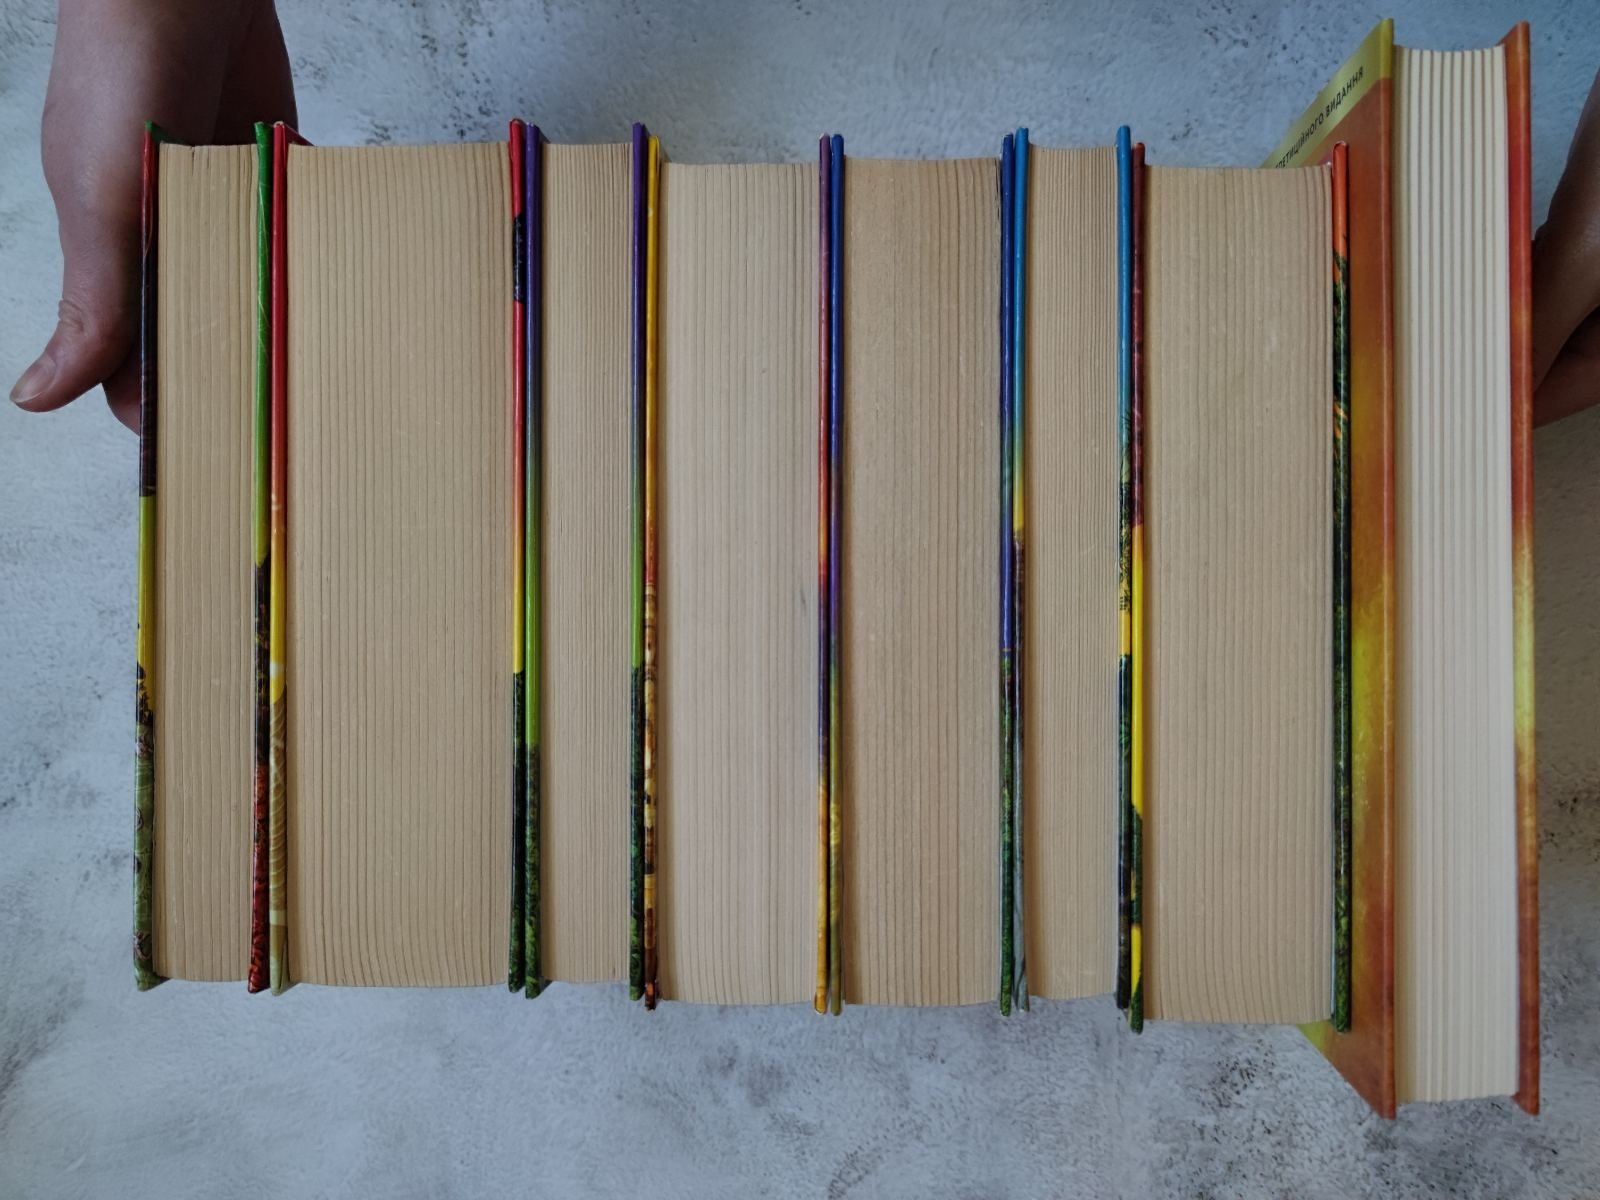 Гаррі Поттер Комплект з 8 книг